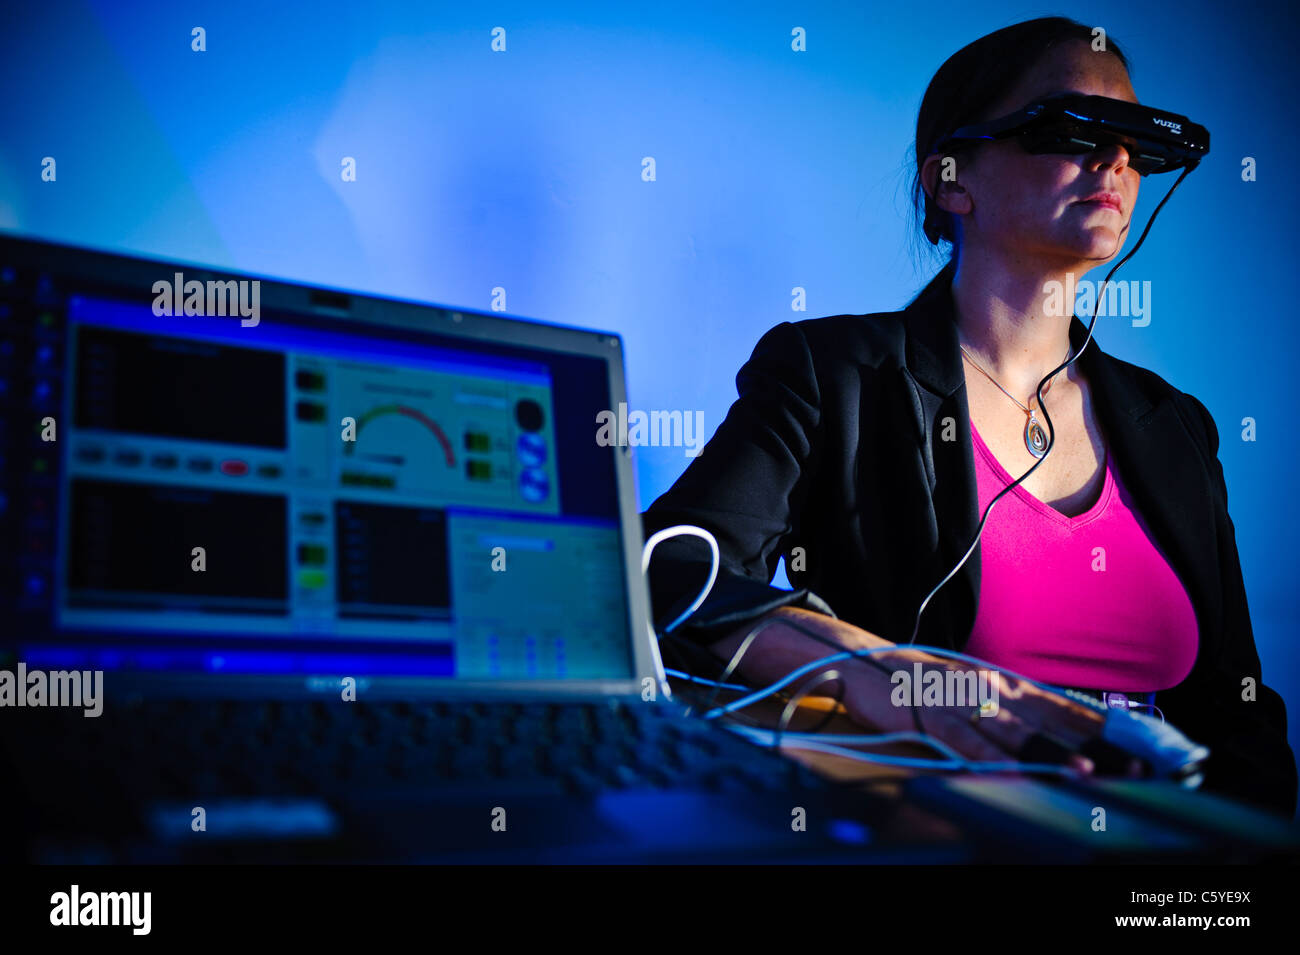 Sous réserve de porter des lunettes de réalité virtuelle dans l'étude scientifique pour traiter l'ordinateur portable de phobie qui montre les résultats à l'écran en premier plan blue Banque D'Images